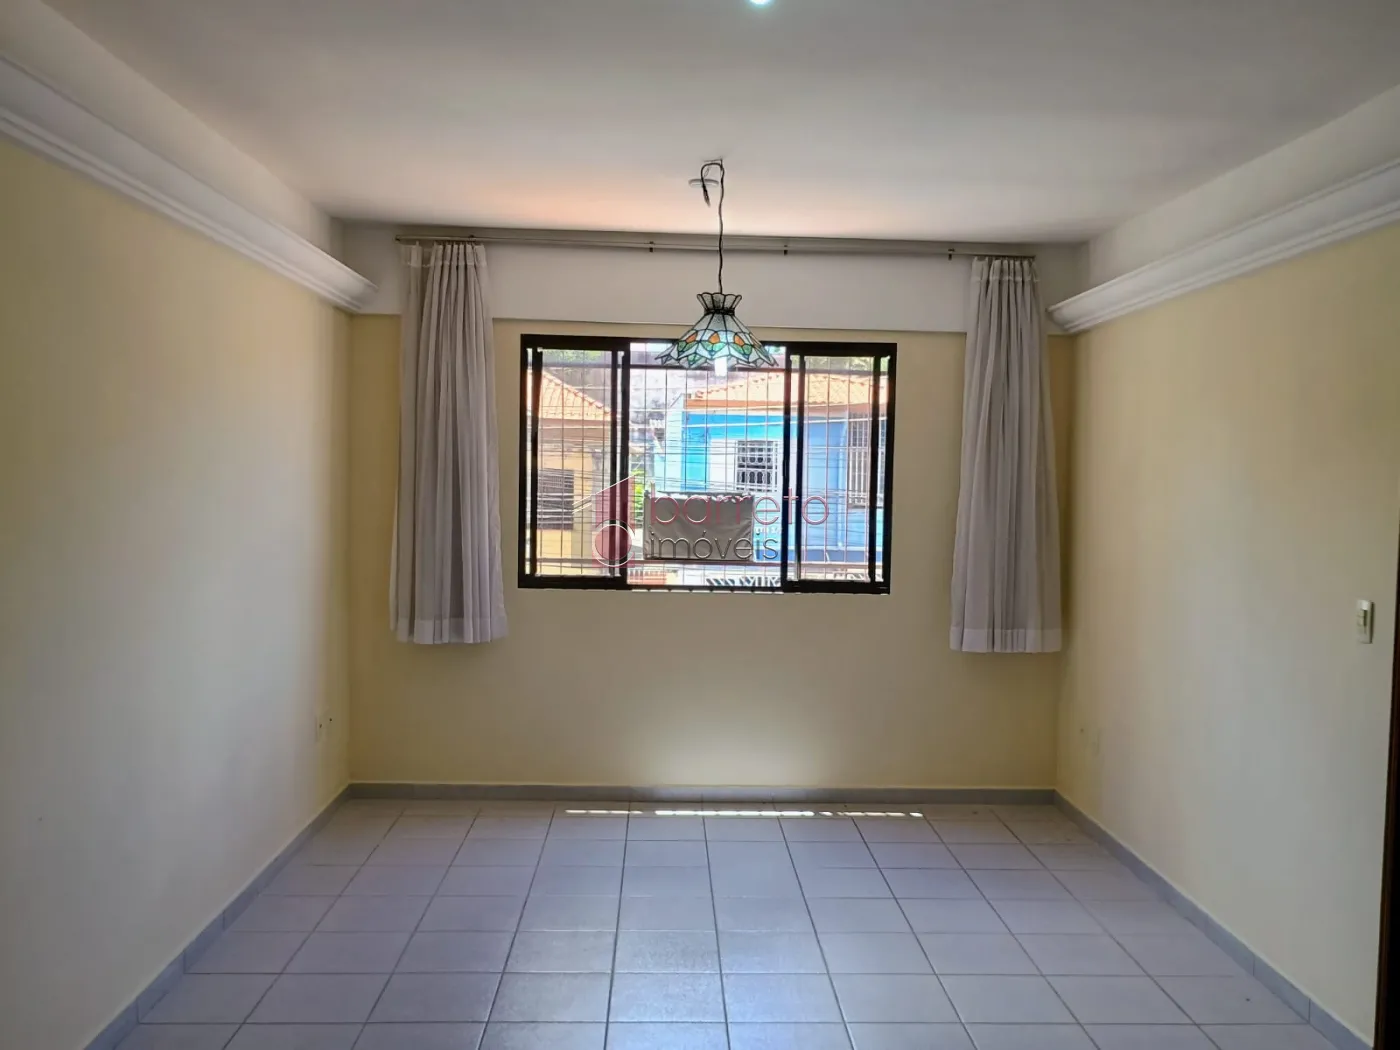 Alugar Apartamento / Padrão em Jundiaí R$ 2.100,00 - Foto 1